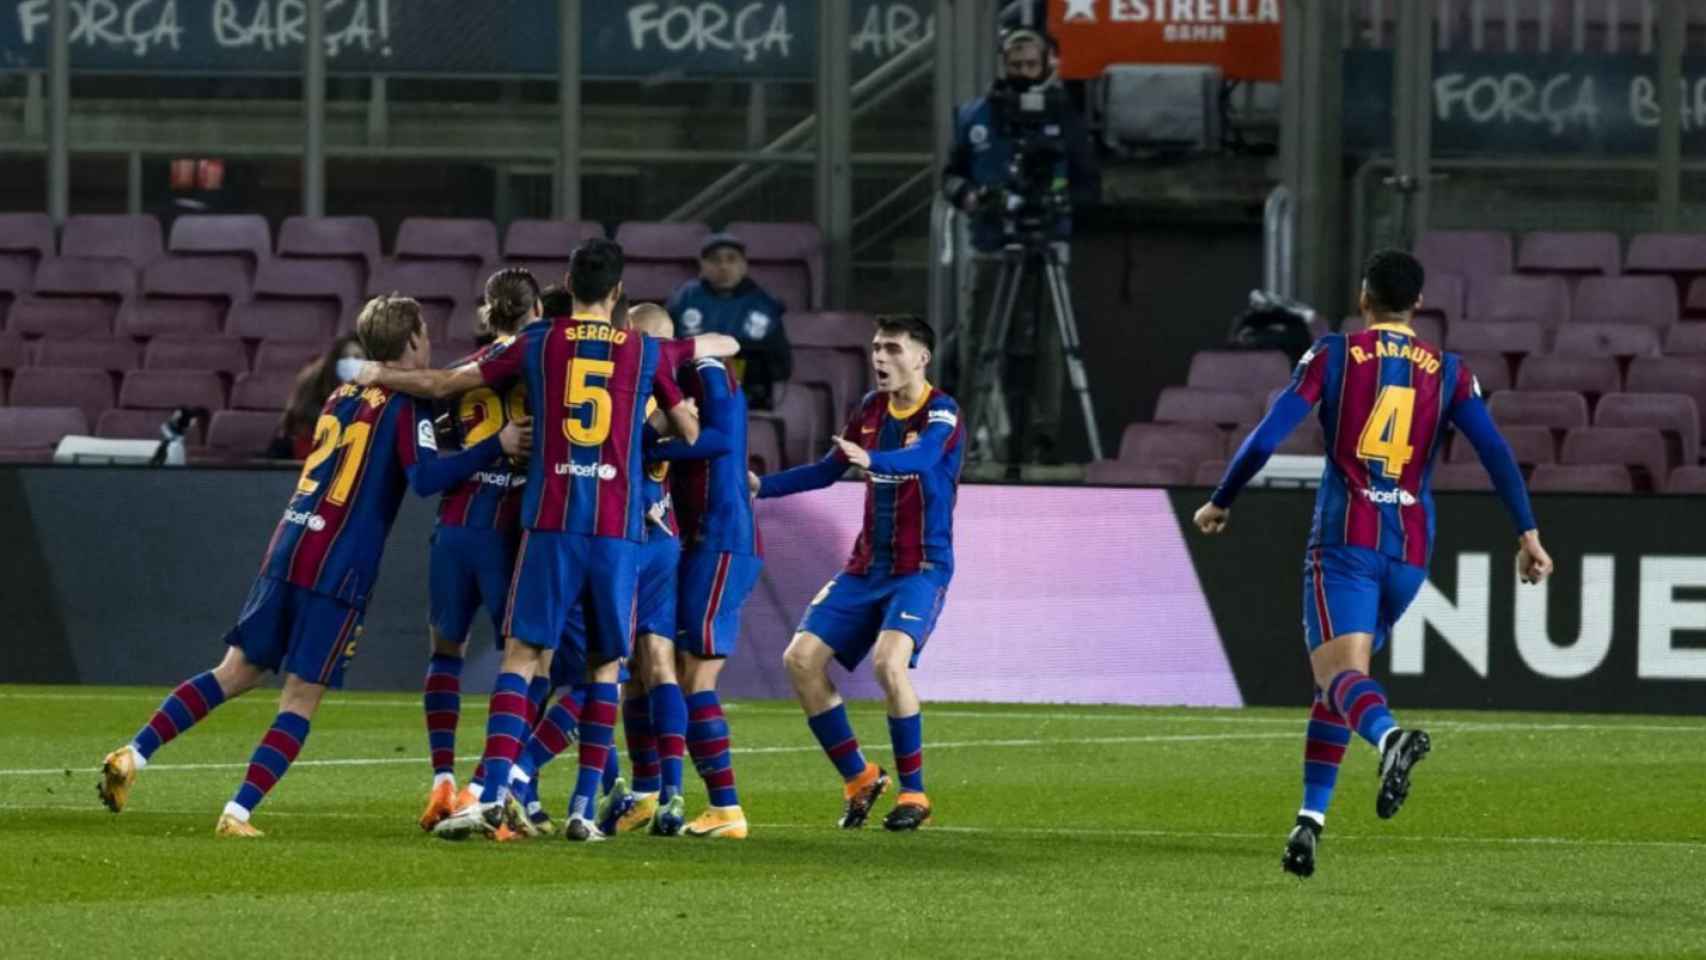 Los jugadores del Barça celebrando un gol contra la Real Sociedad / FC Barcelona